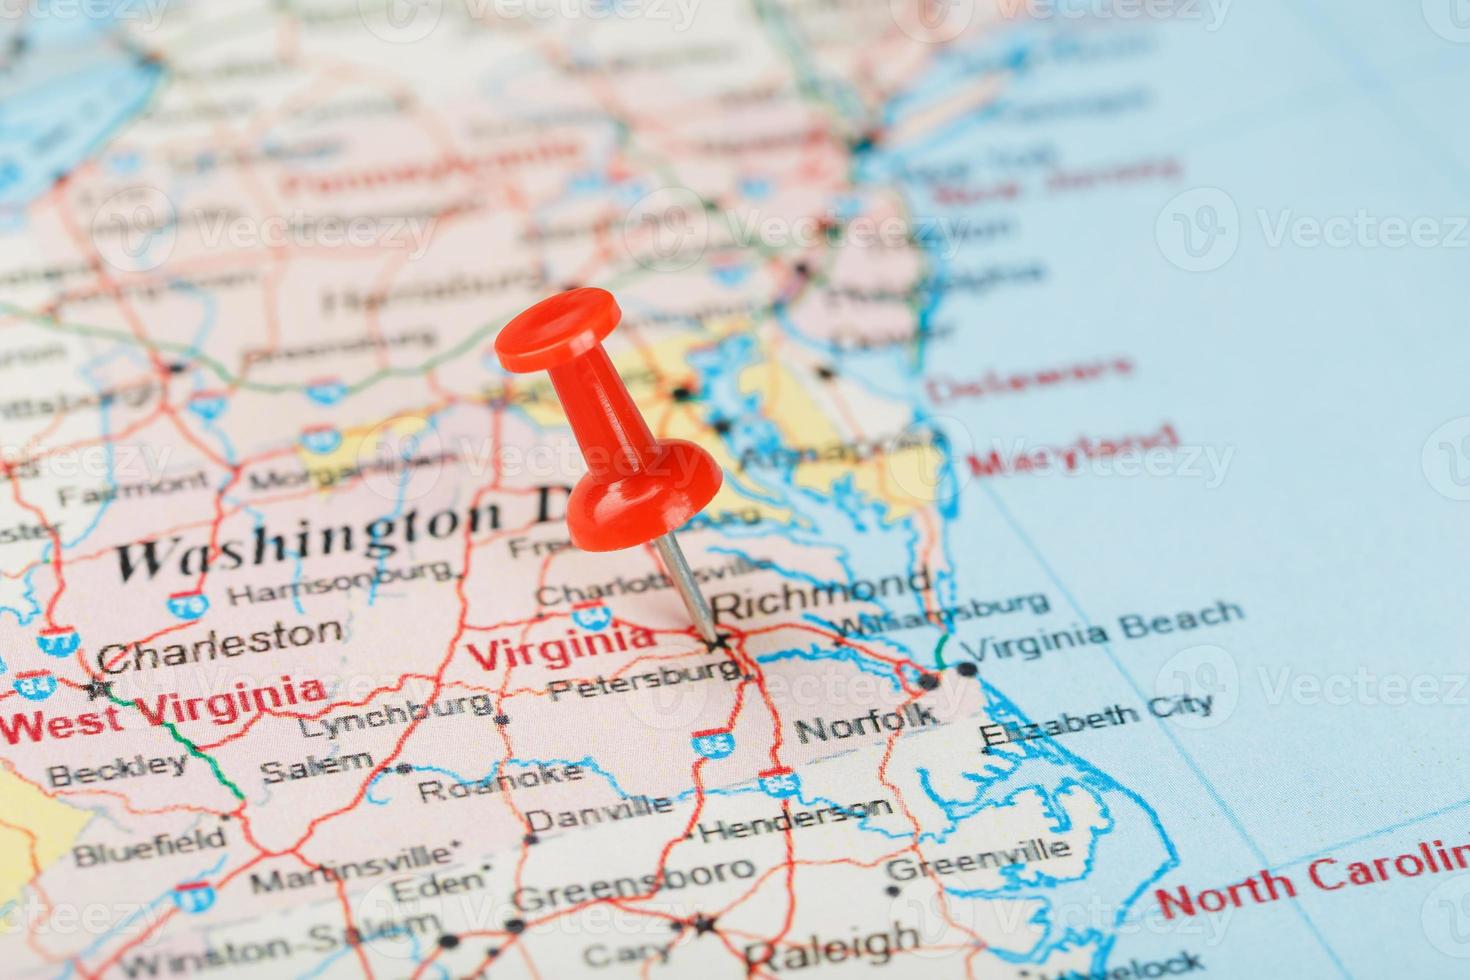 aguja clerical roja en un mapa de estados unidos, virginia del sur y la capital richmond. Cerrar mapa del sur de Virginia con tachuela roja foto